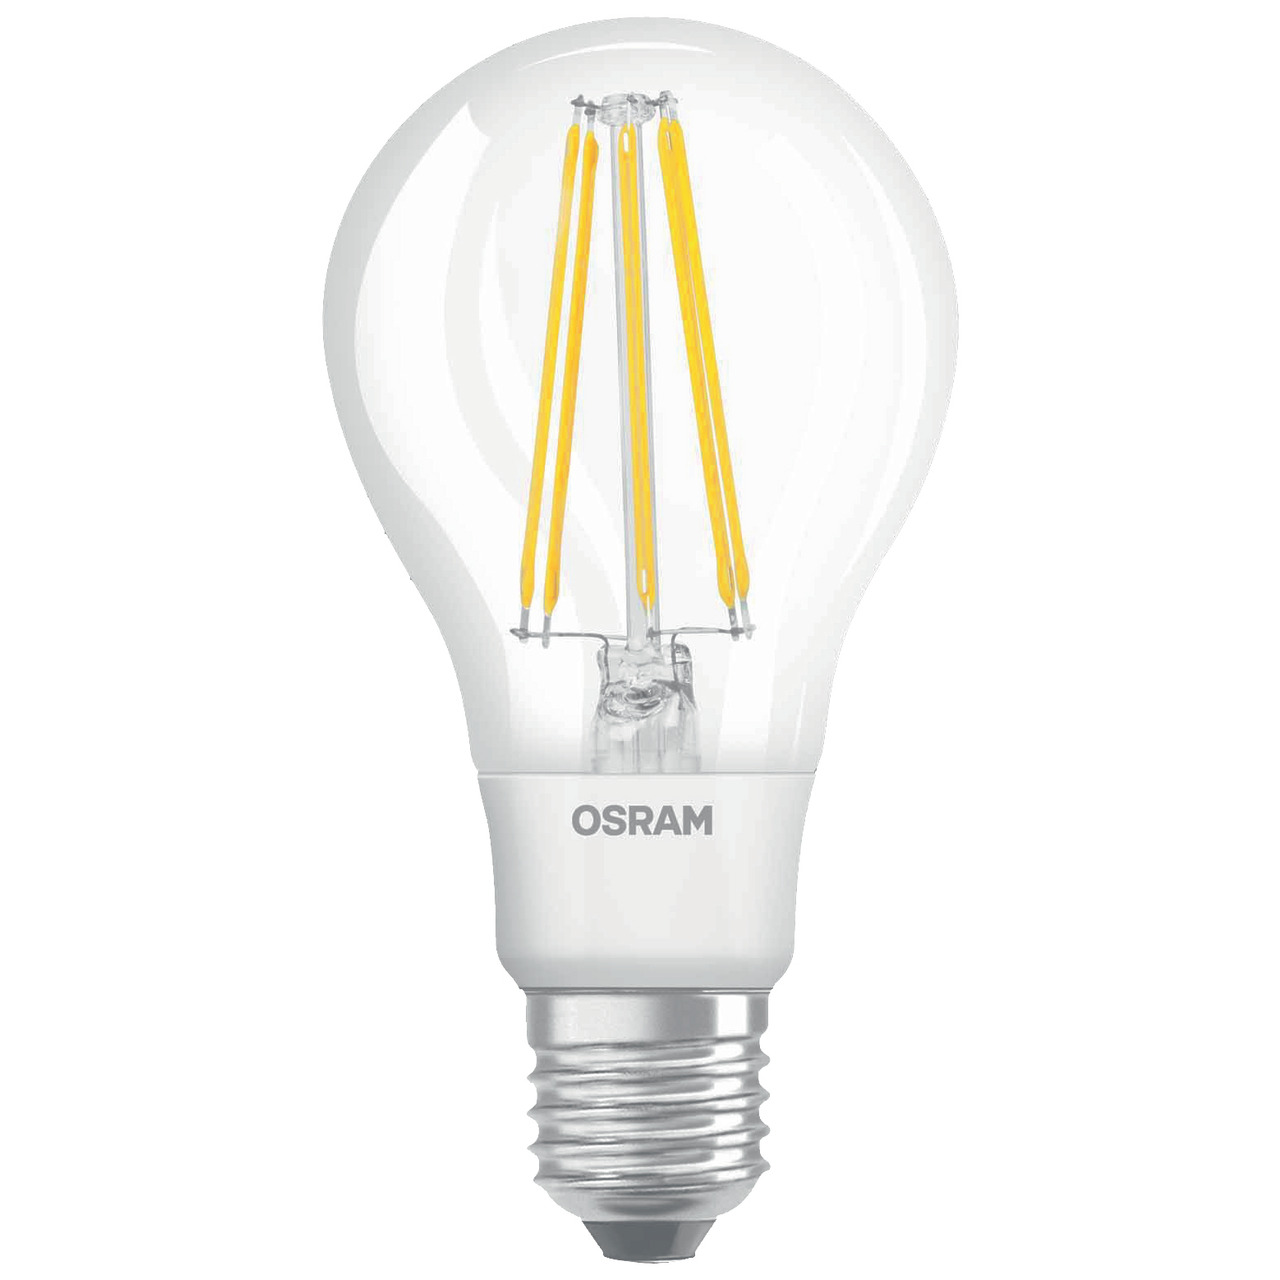 OSRAM LED RETRO Glass Bulb 11-W-LED-Lampe E27- klar